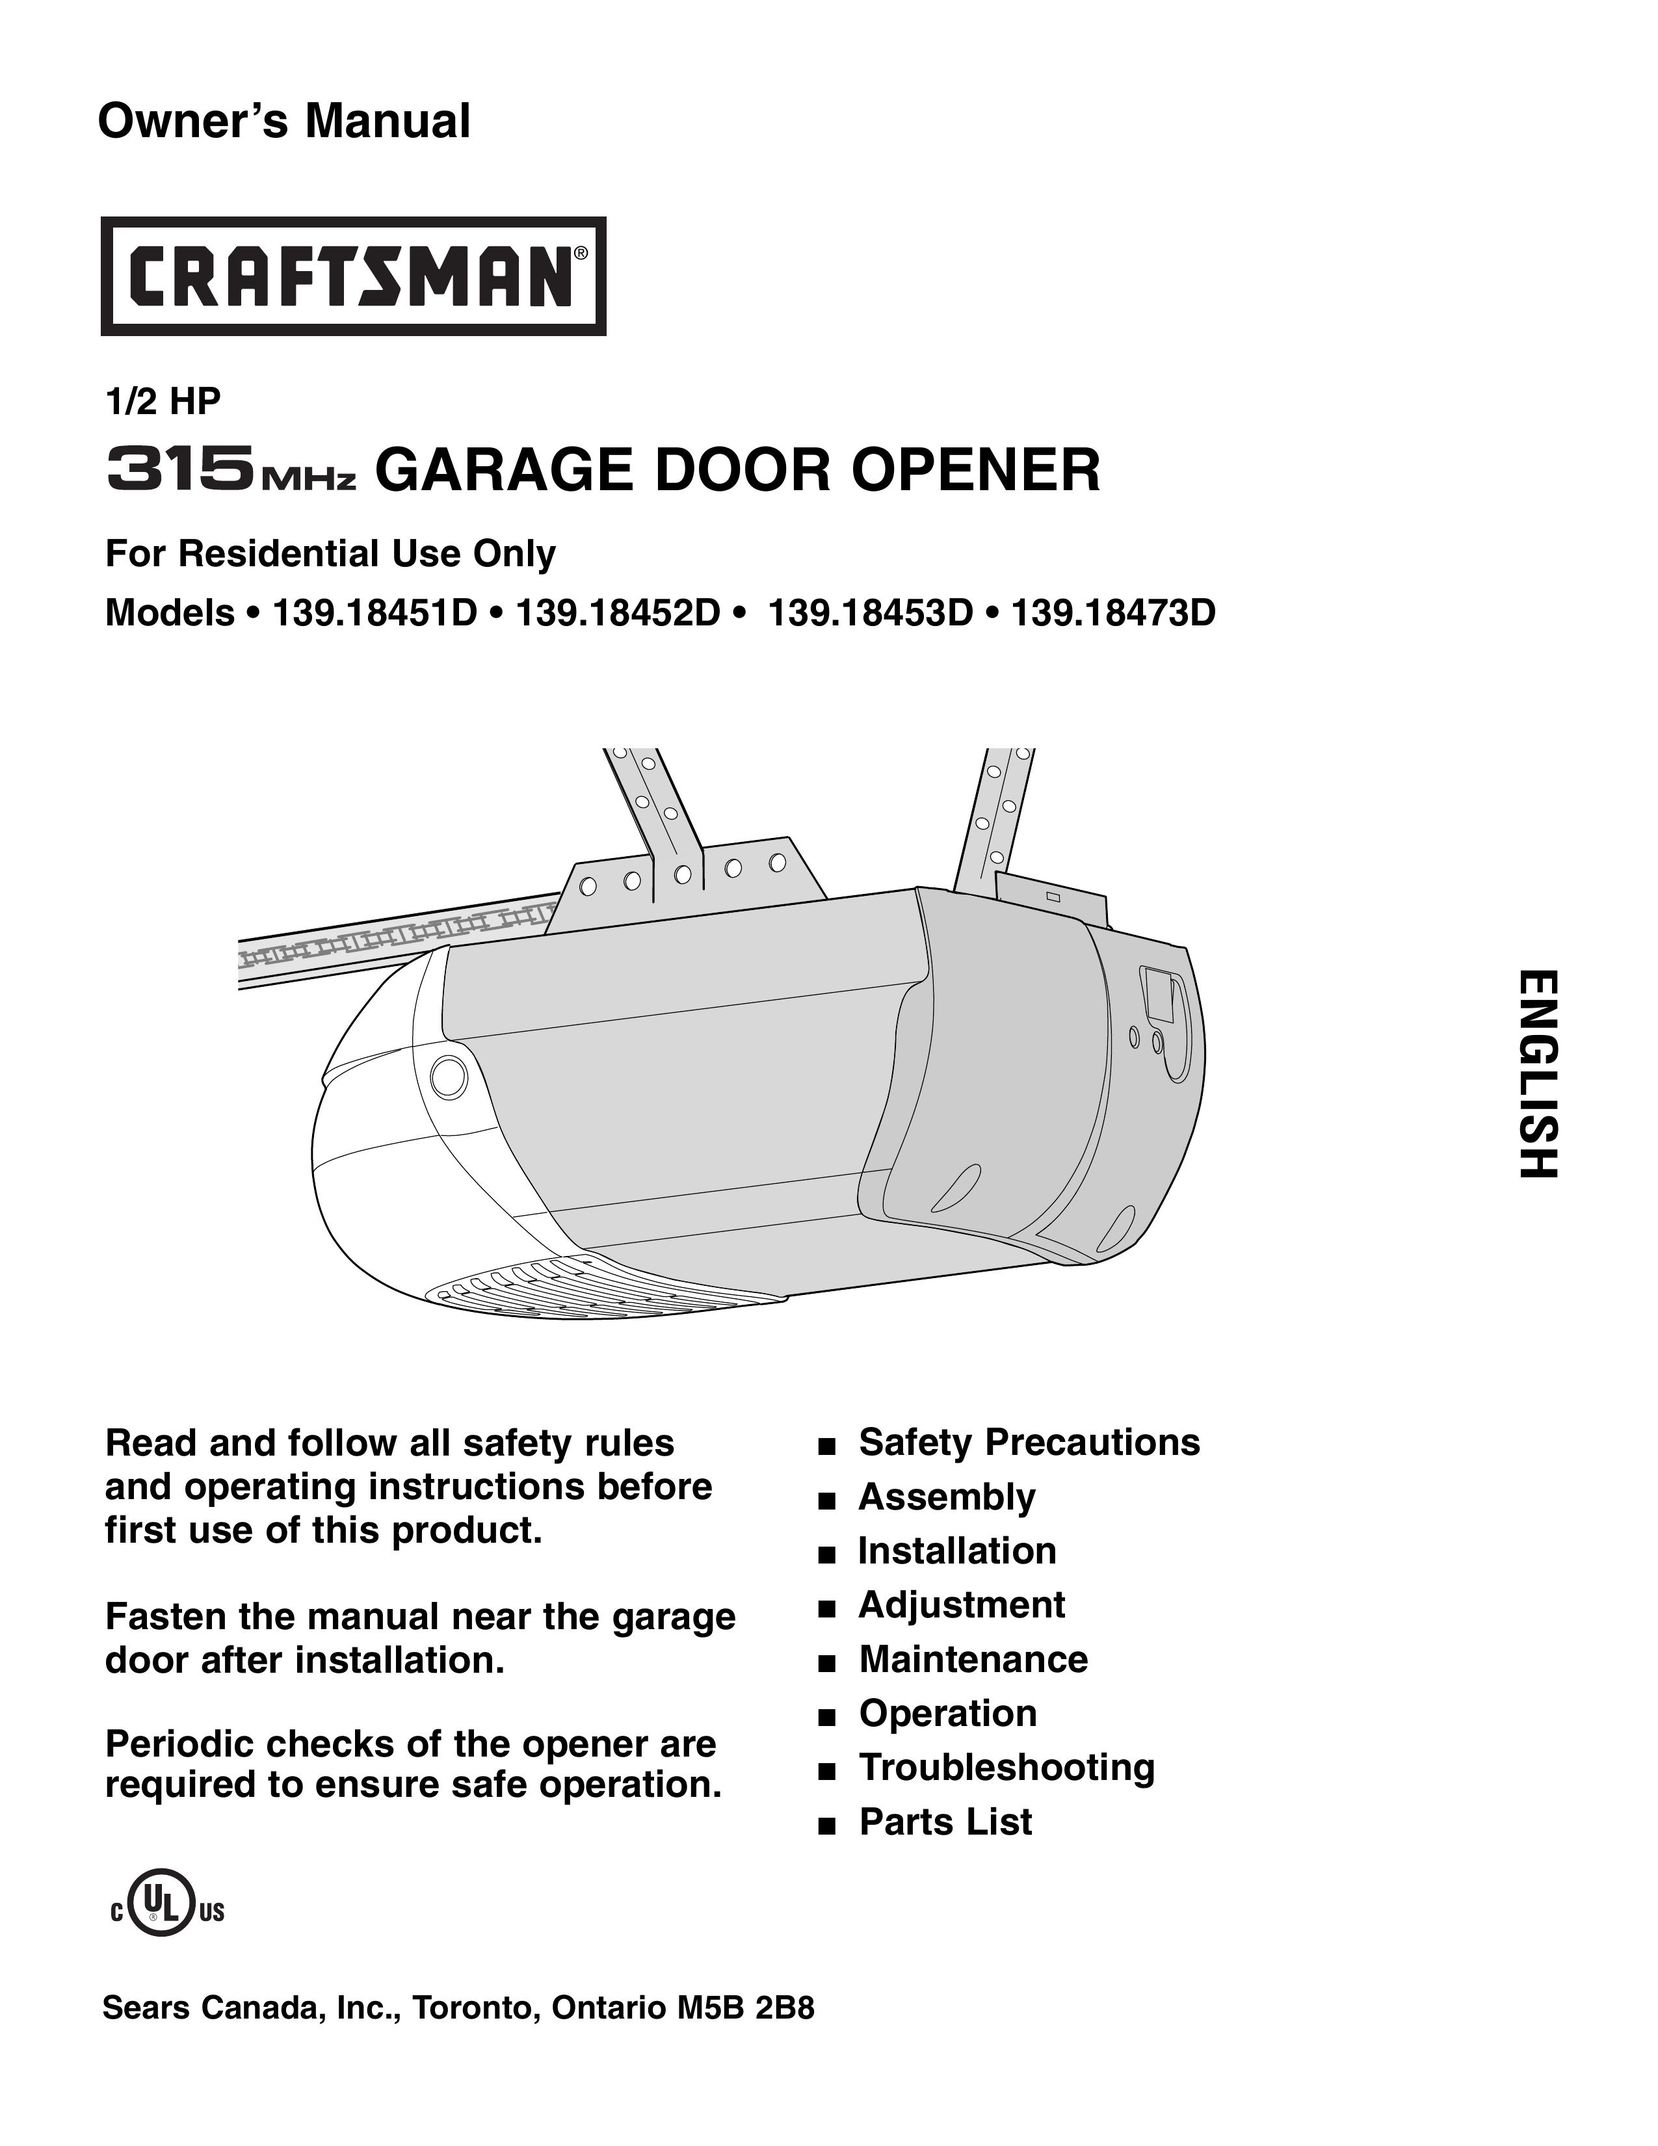 Craftsman 139.18451D Garage Door Opener User Manual